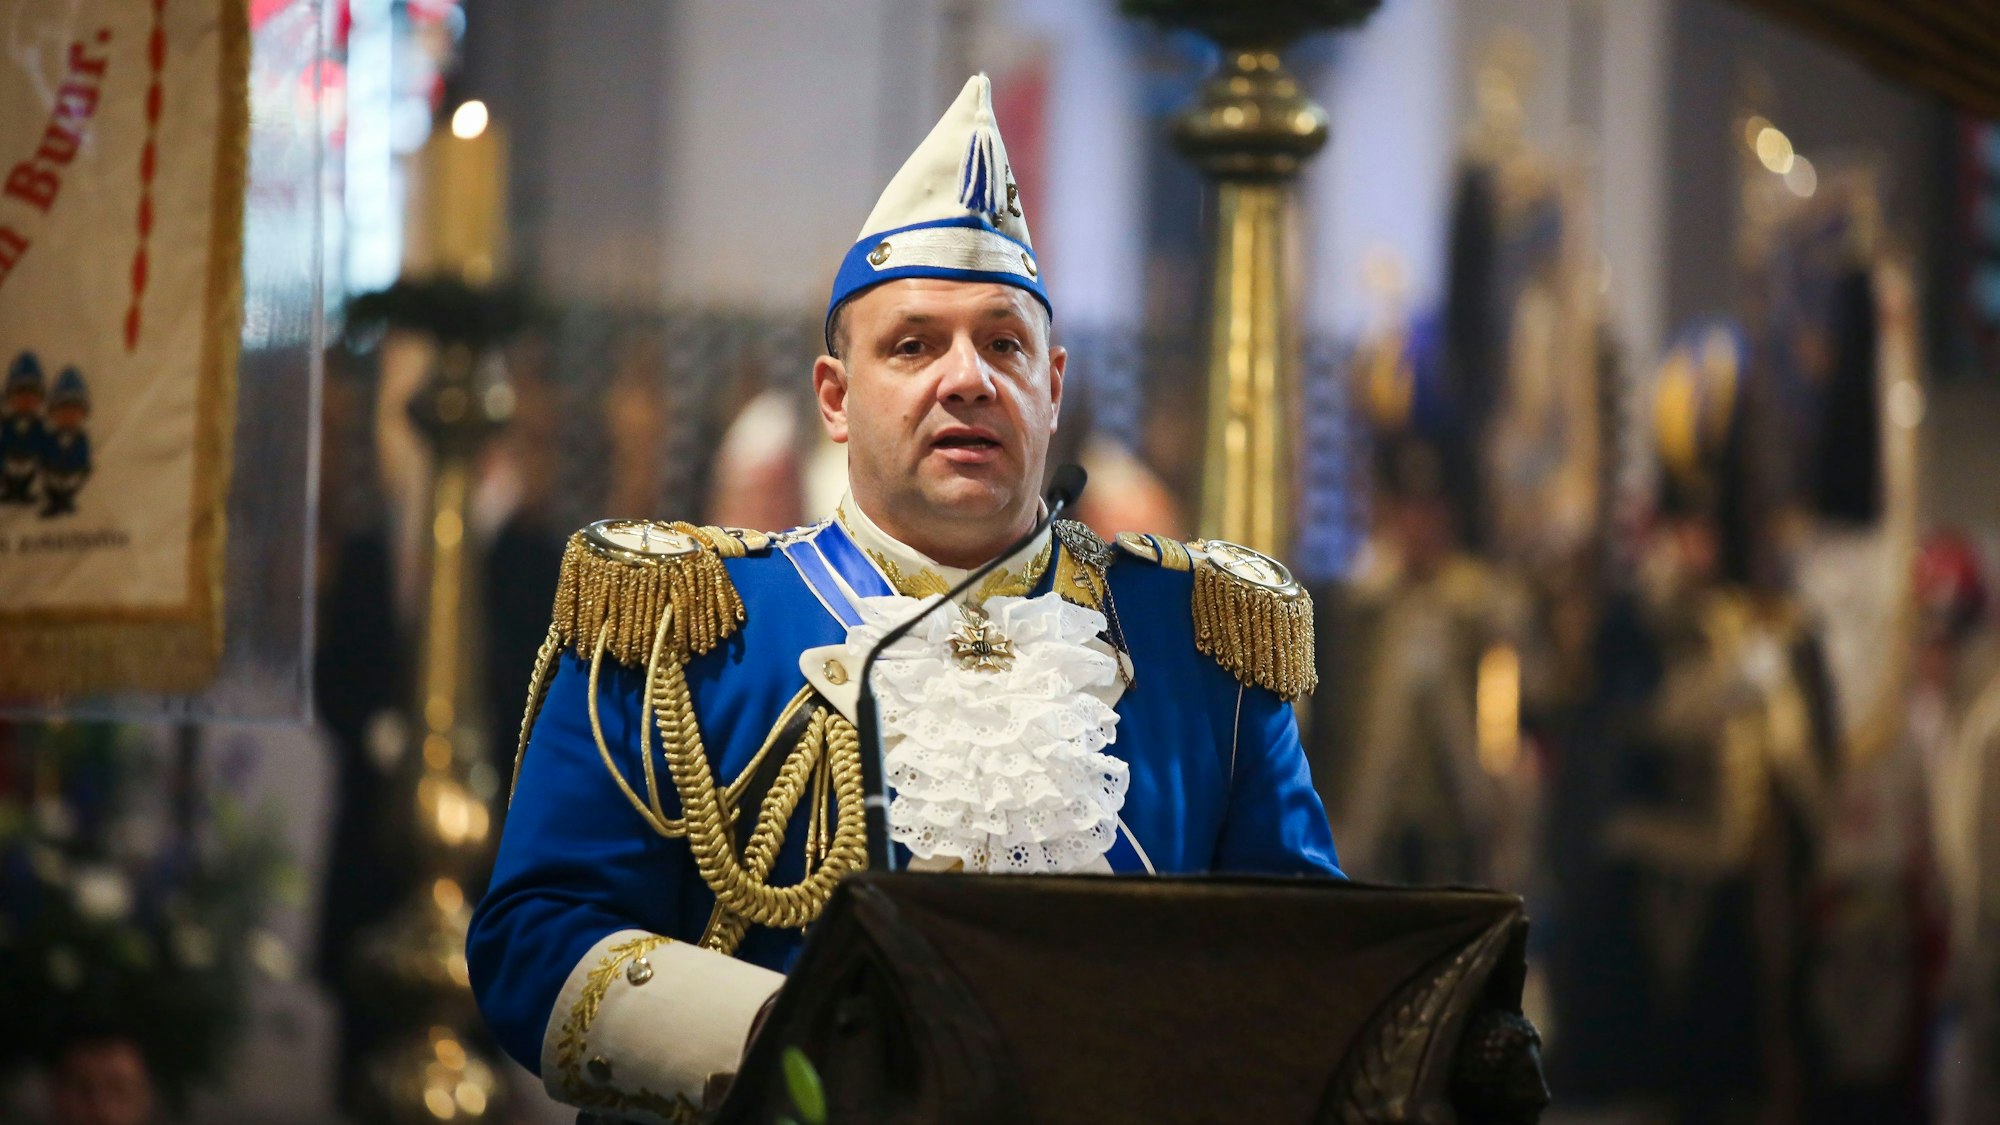 Björn Griesemann, Präsident der Blauen Funken, verabschiedete sich mit einem „Kölle Alaaf“ und dem Satz „Fro, jetz häs do em Himmel de Spetz“.